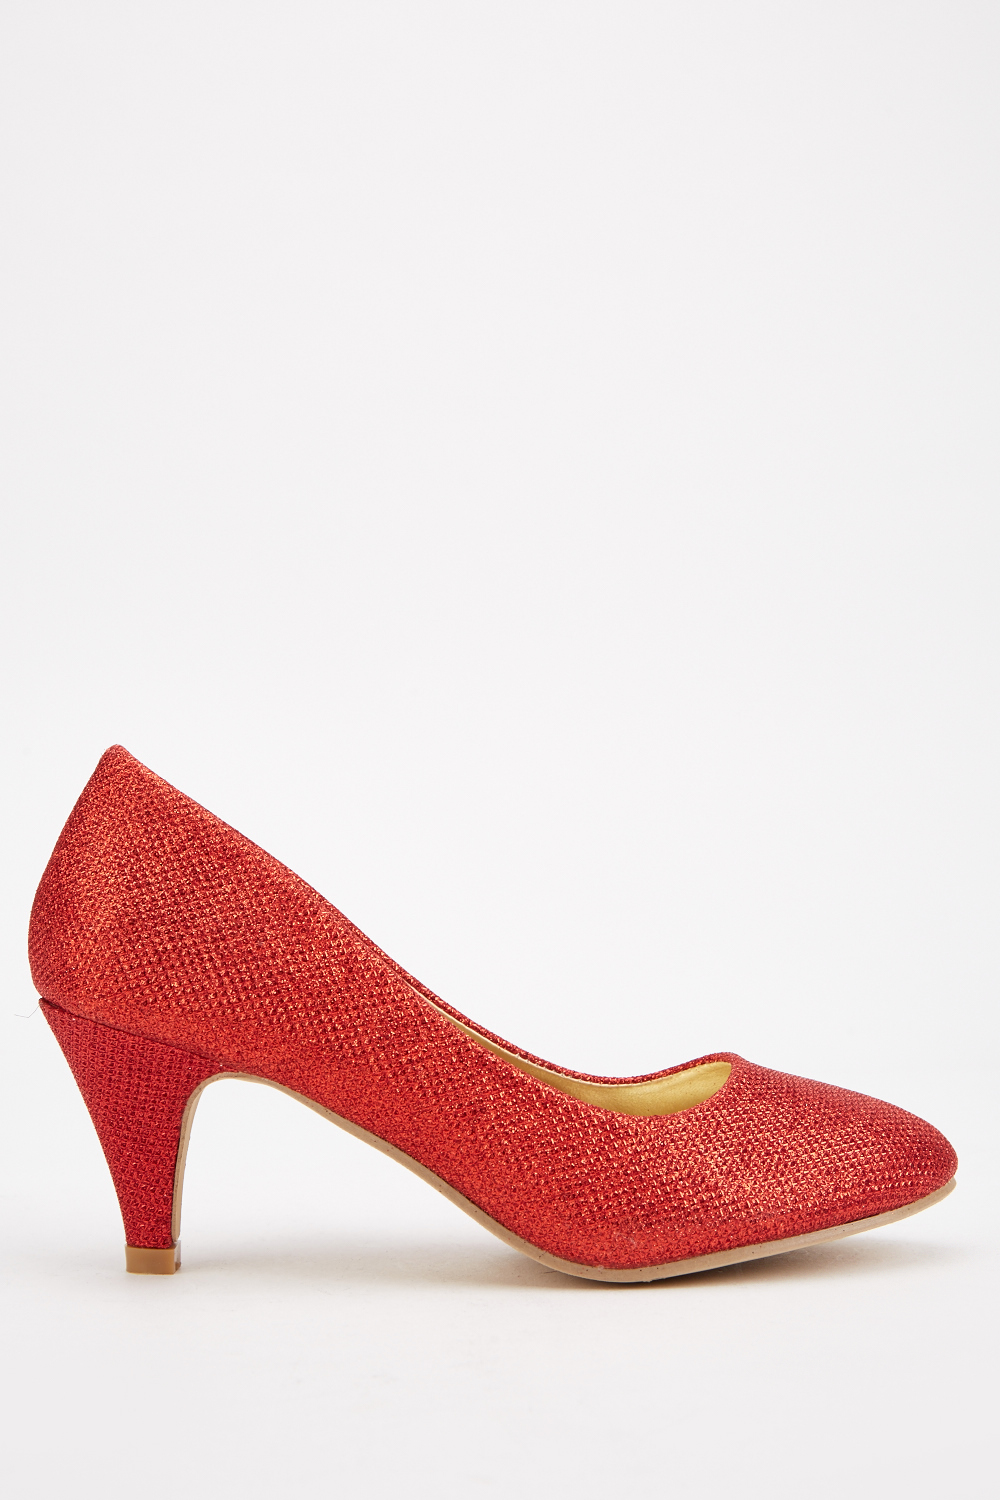 red pump shoes low heel